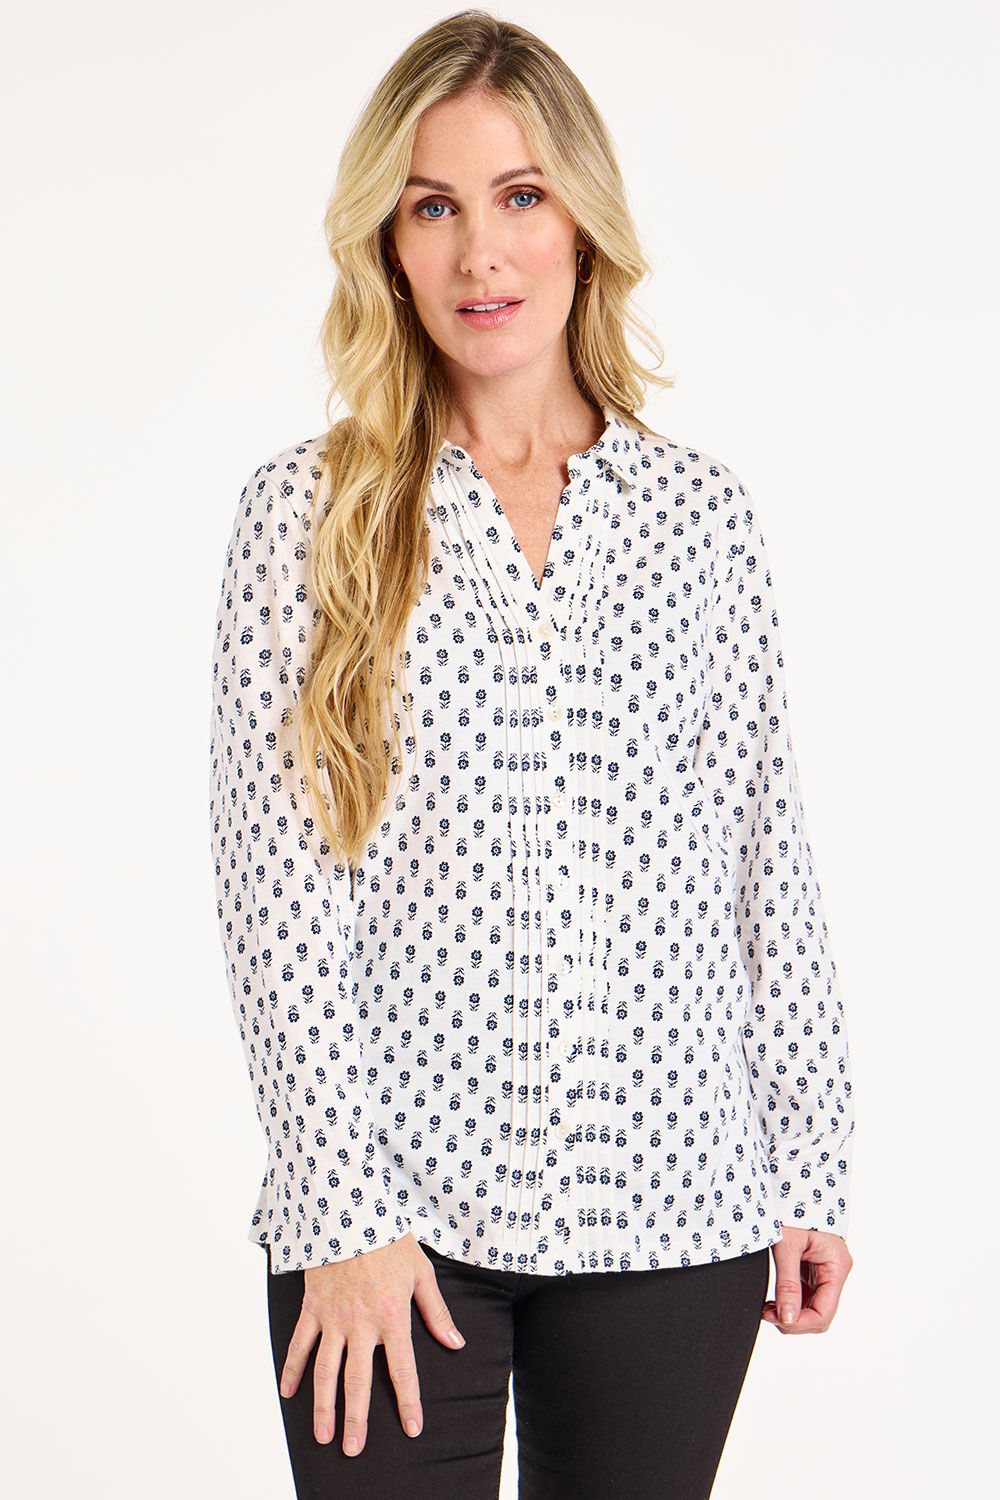 Bonmarche White/grey Long Sleeve Floral Foulard Print Jersey Shirt, Size: 16